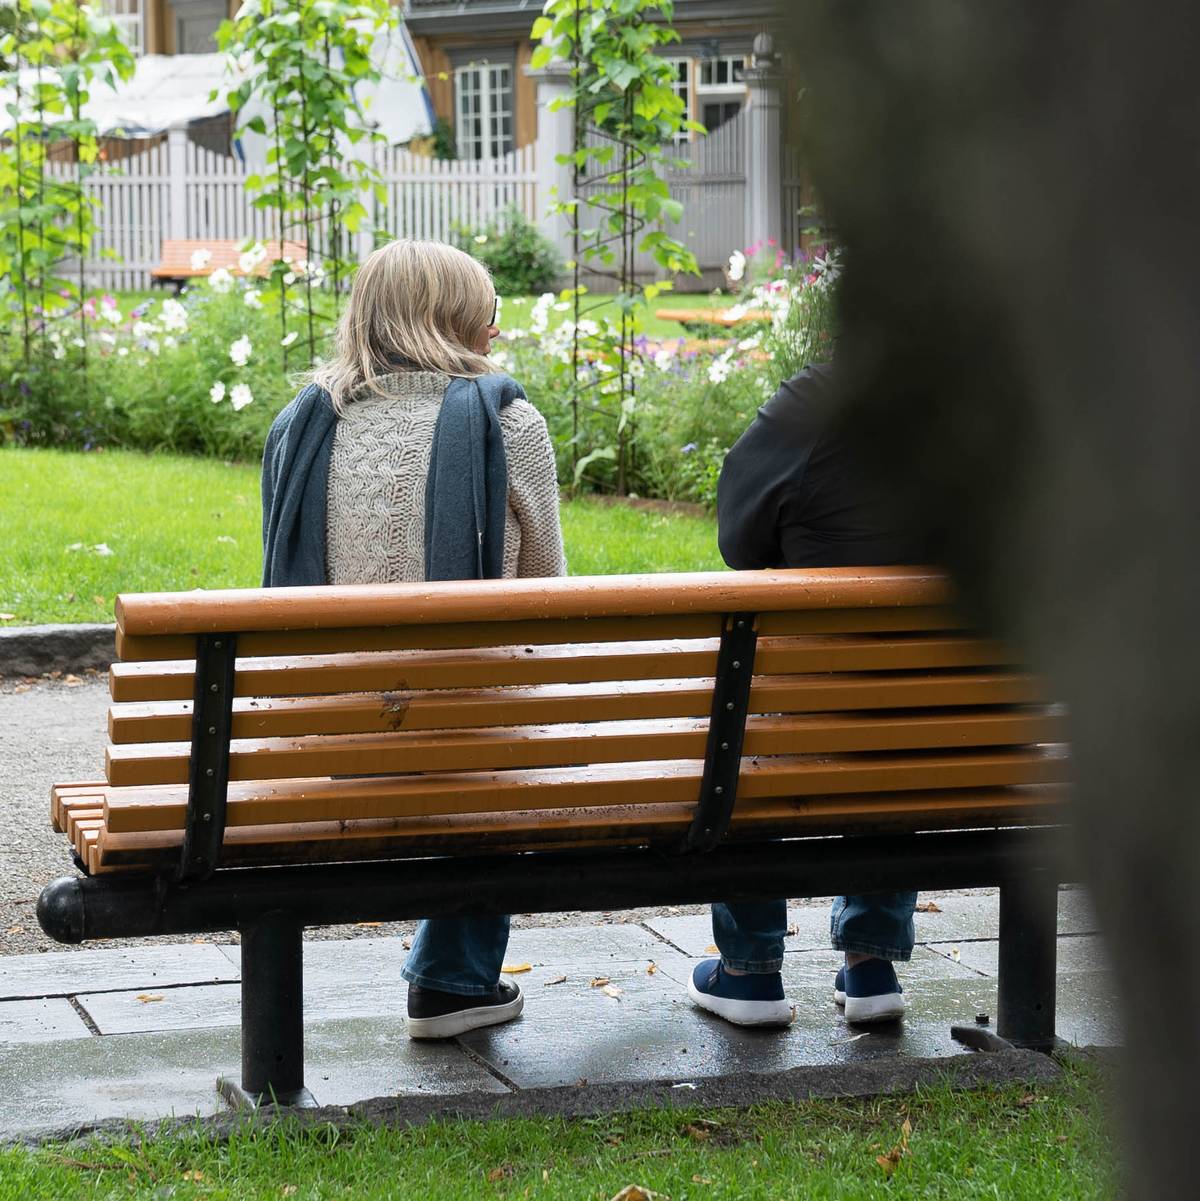 Seksuelle overgrep mot Tror behandling av overgripere kan redde i fremtiden – NRK Trøndelag